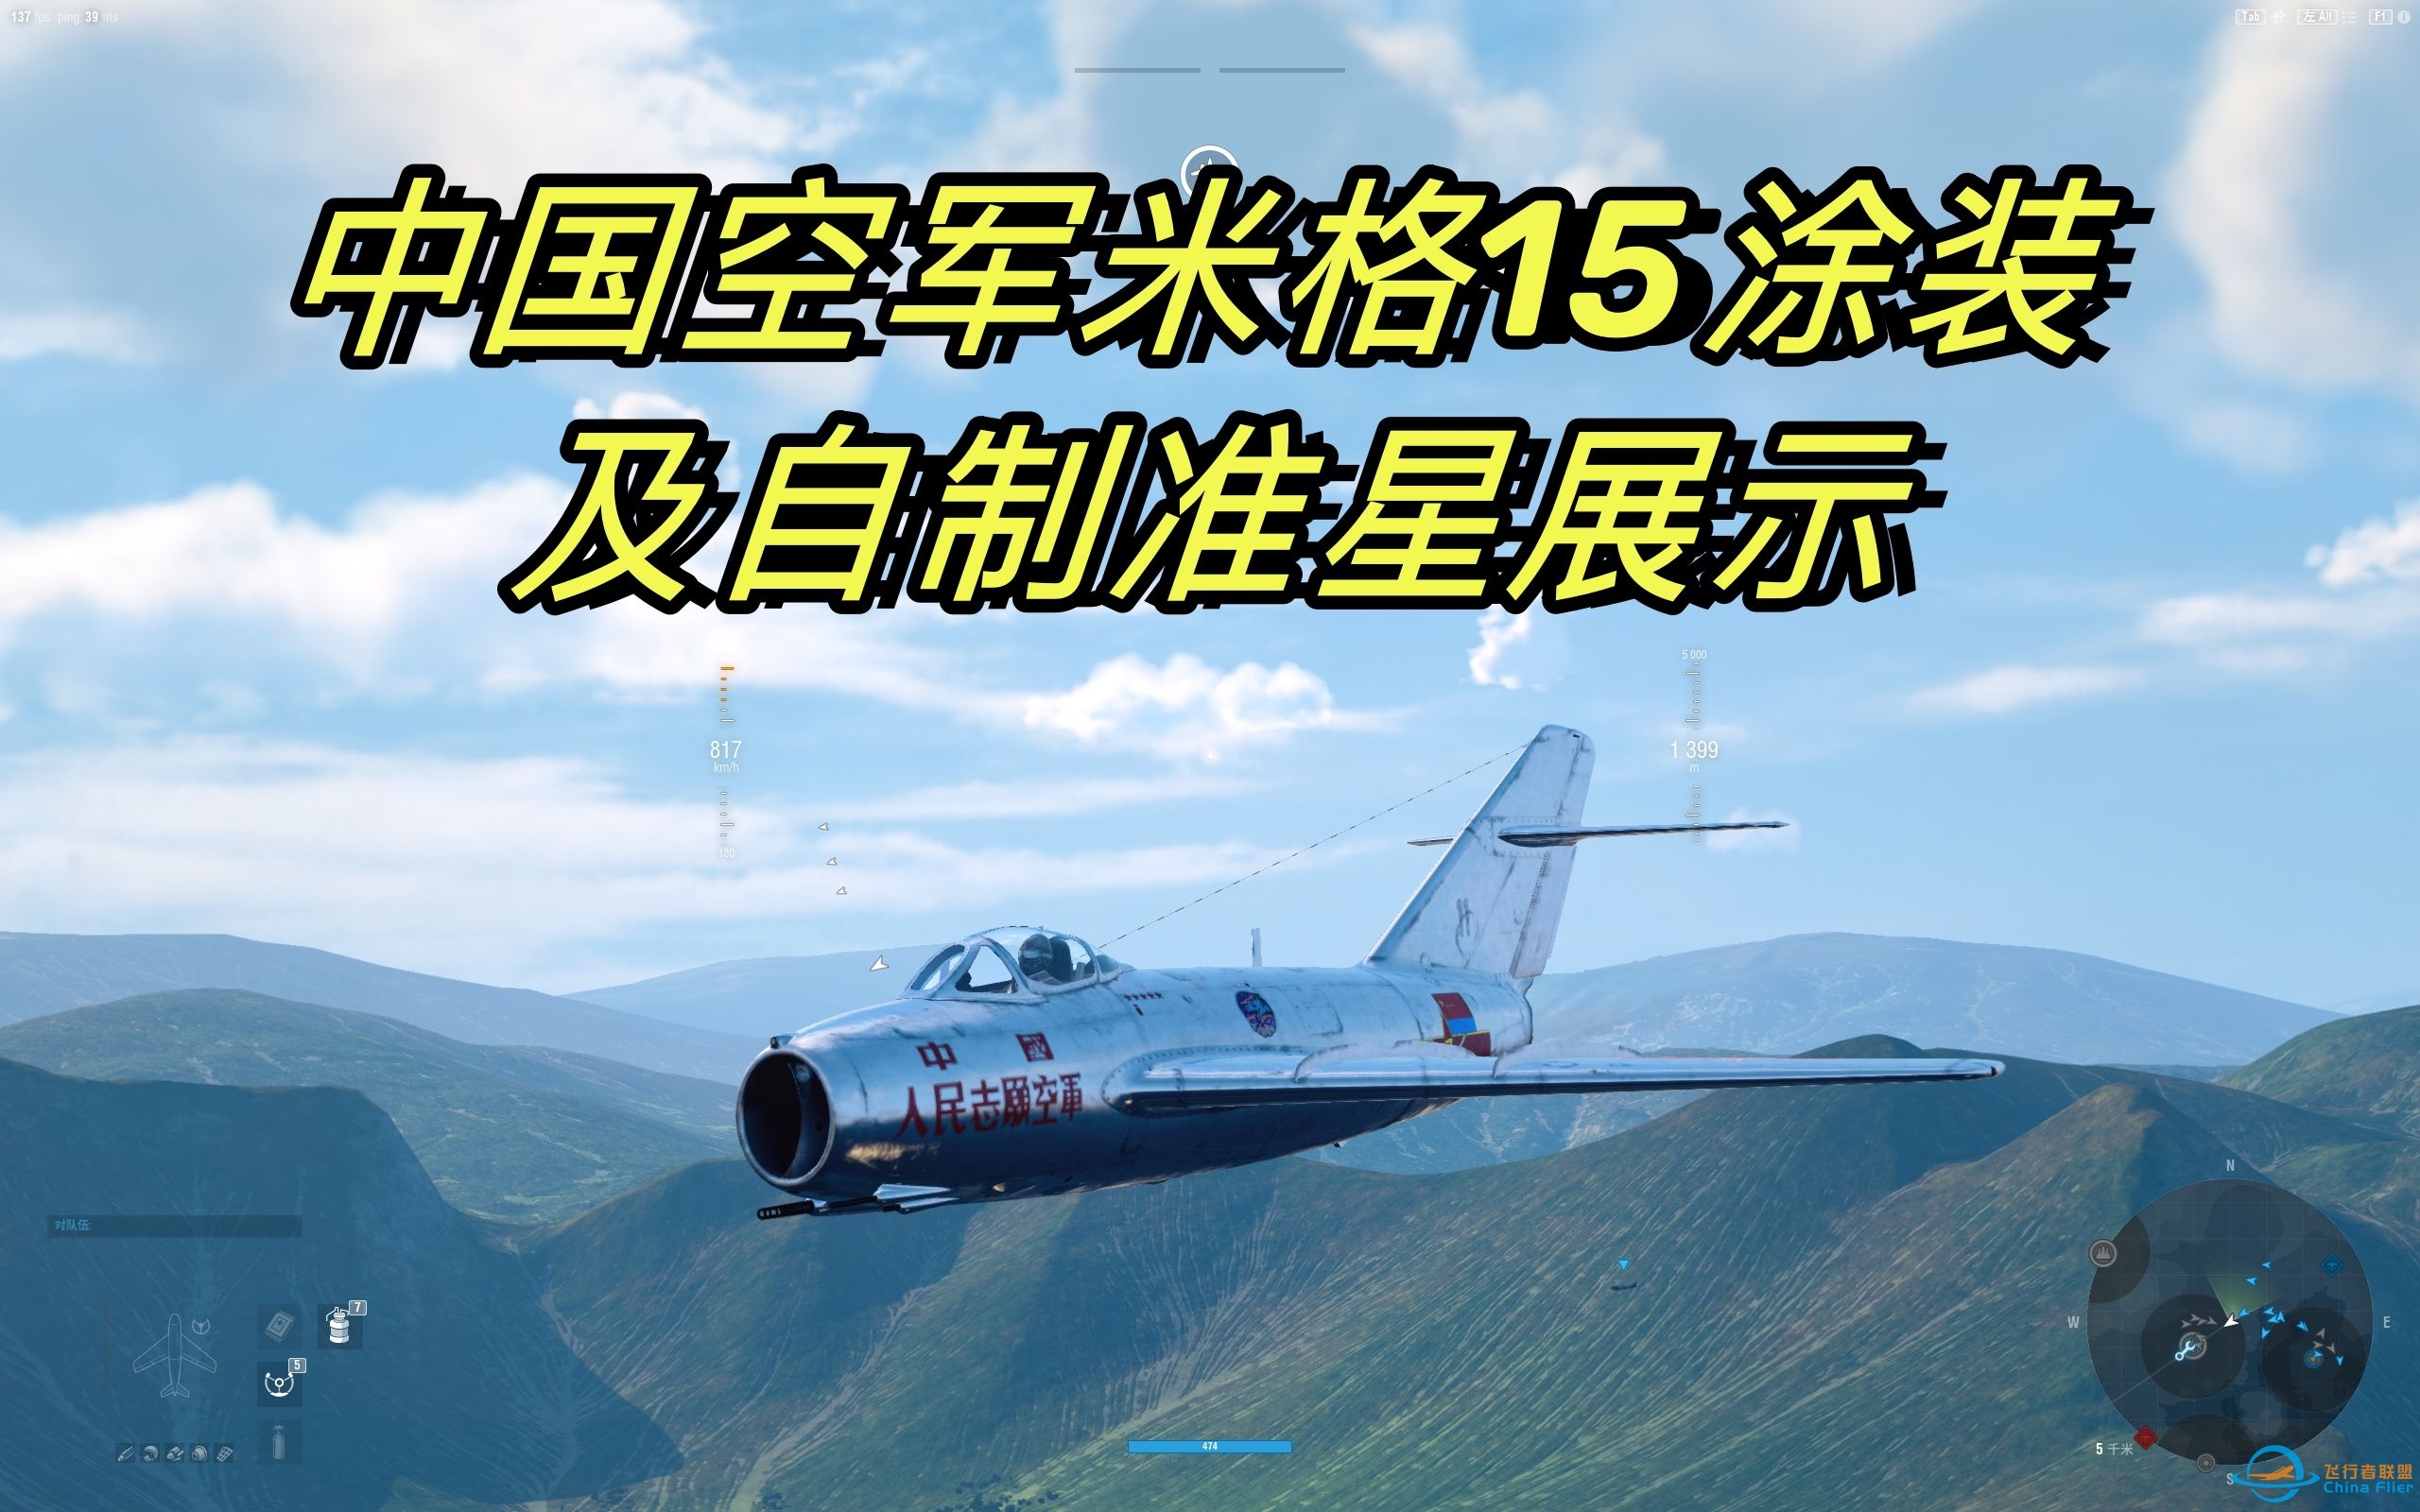 [战机世界]中国空军米格15涂装及自制仿喷火战斗机准星展示-2409 